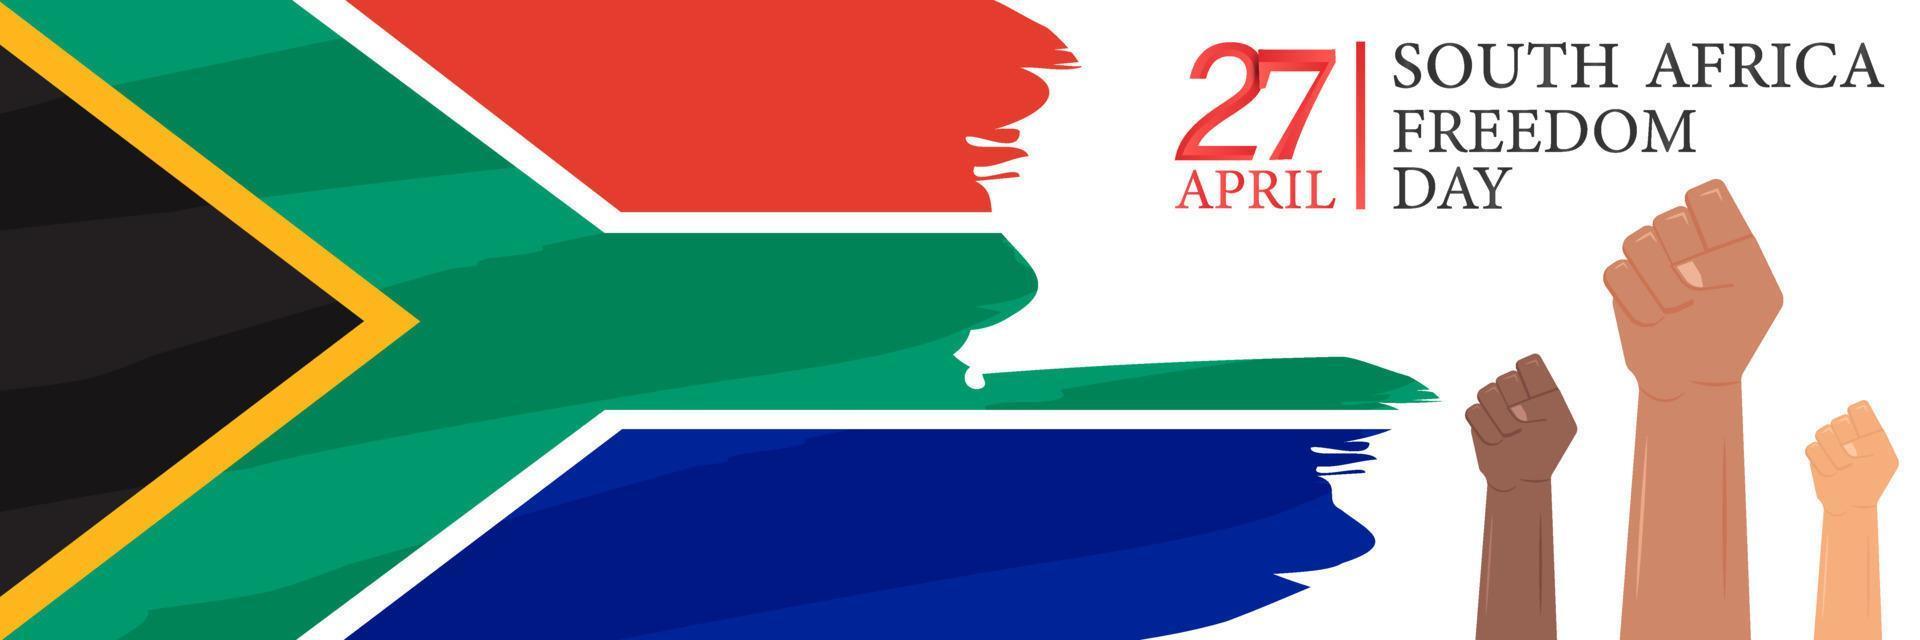 aprile 27. Sud Africa la libertà giorno. carta, striscione, manifesto, sfondo design. vettore illustrazione.